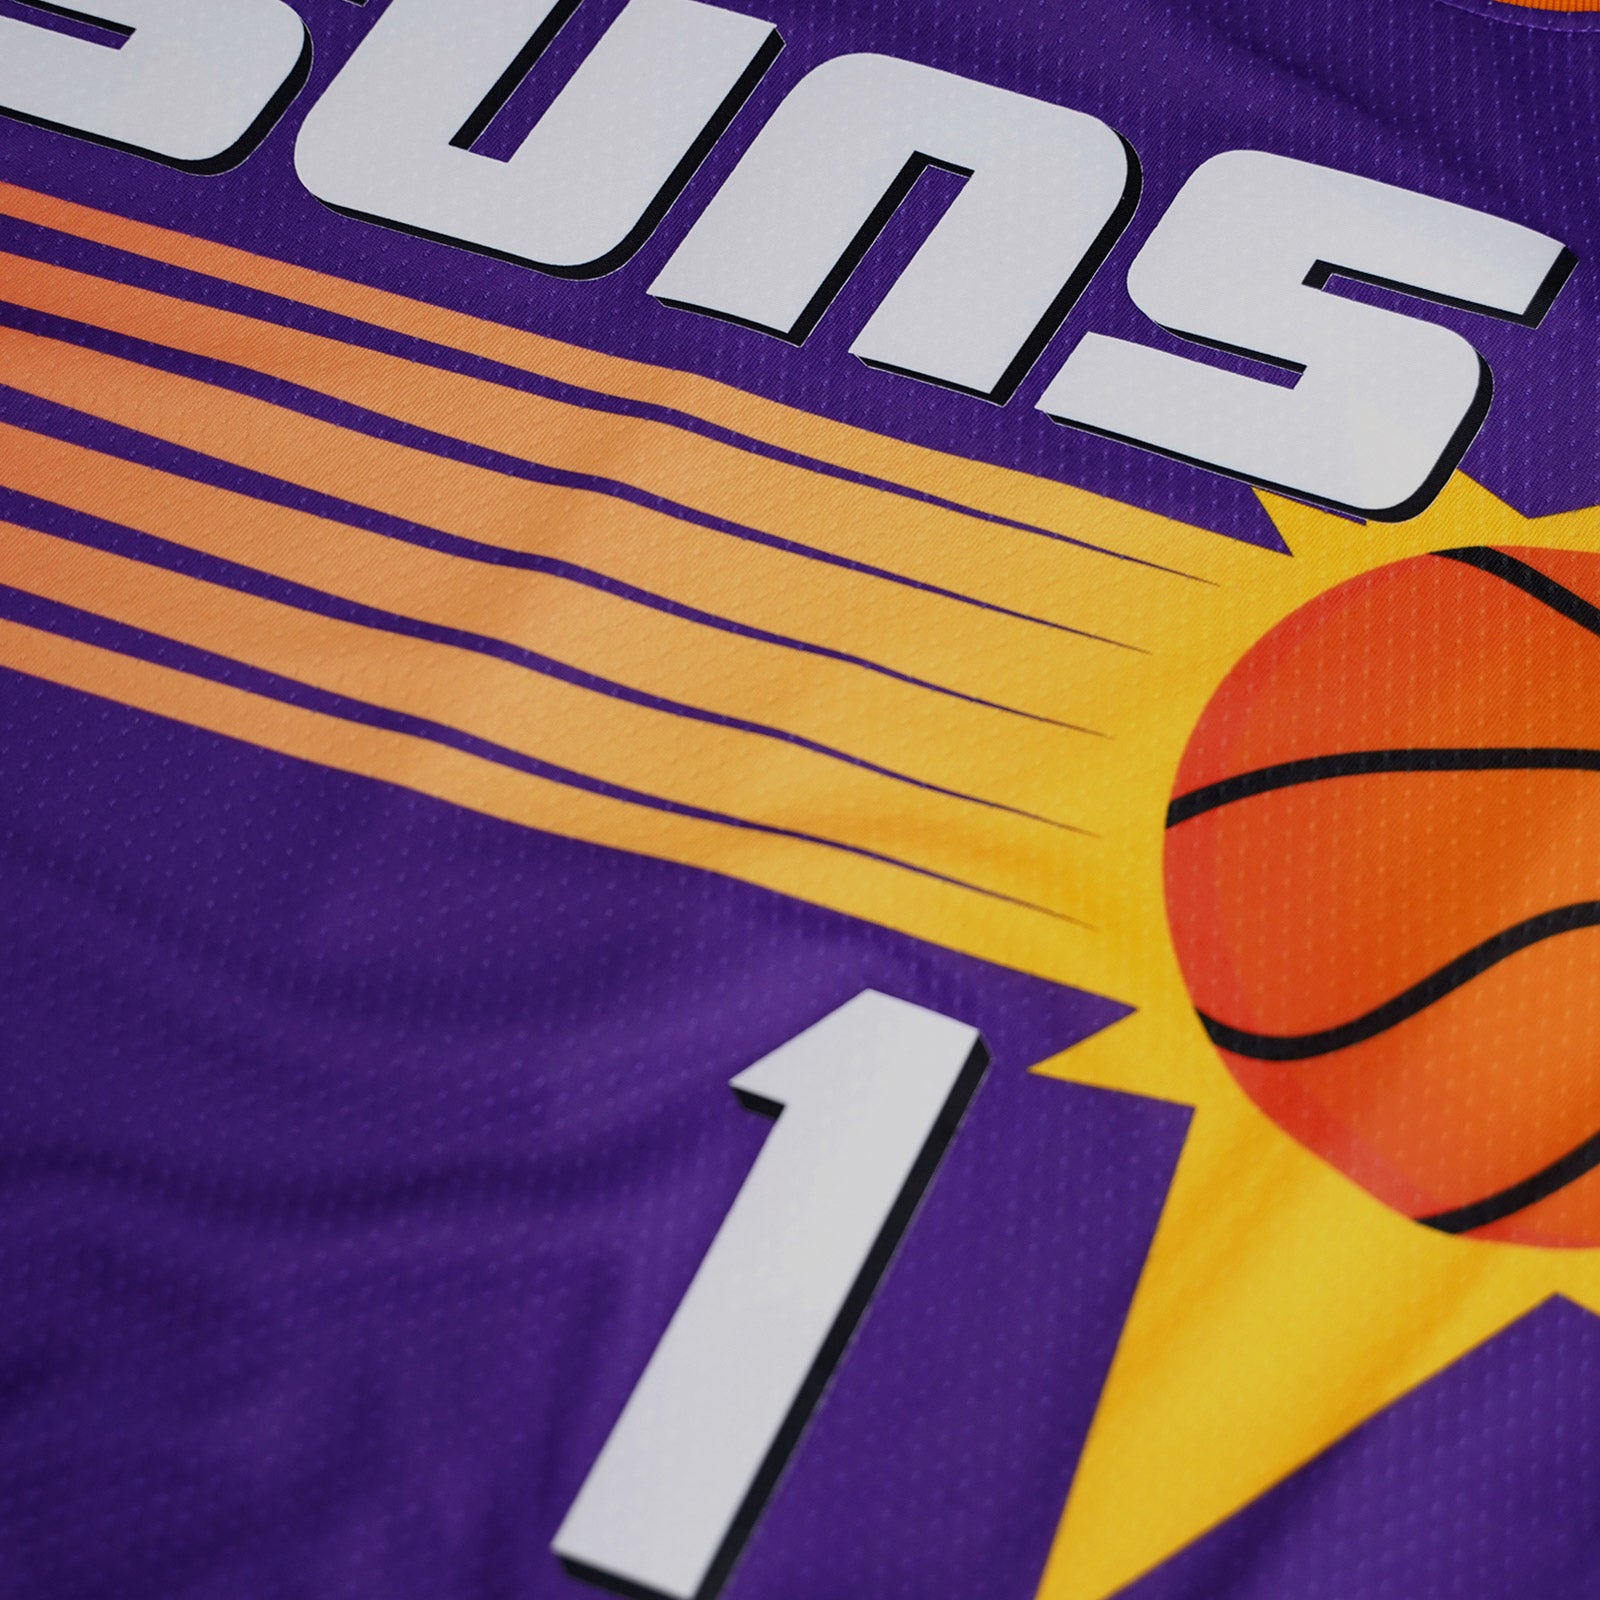 Men's Phoenix Suns Devin Booker Nike Purple Swingman Jersey